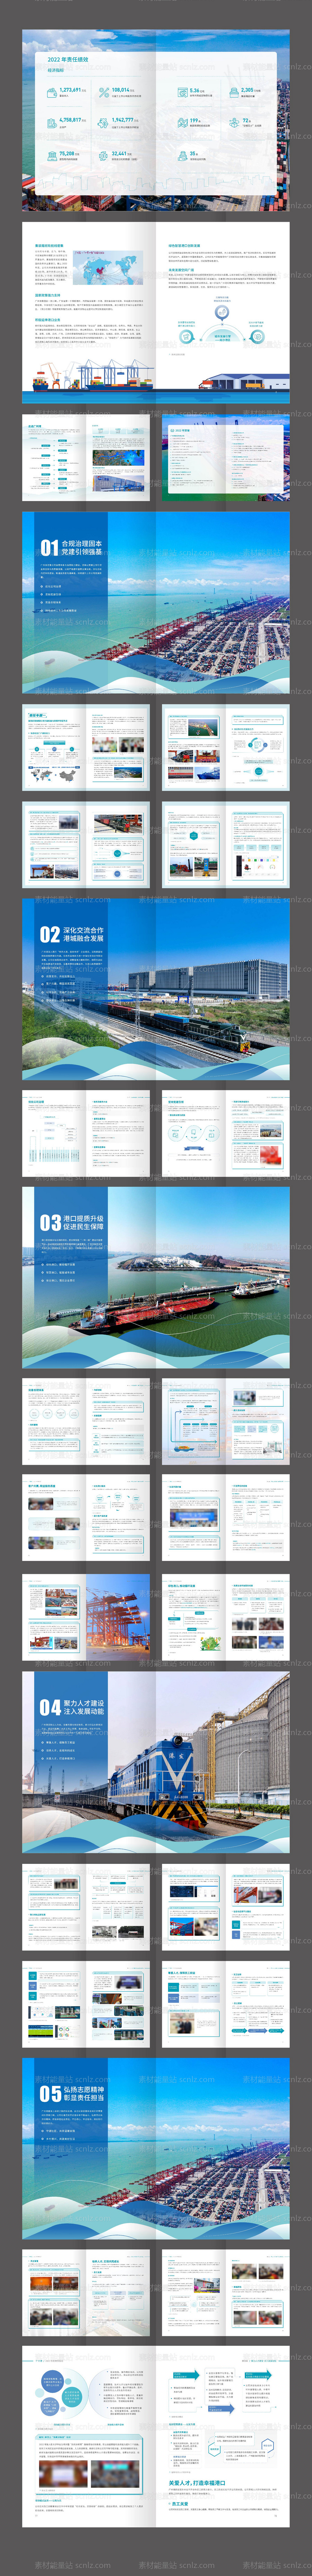 素材能量站-广州港口物流运输企业宣传画册